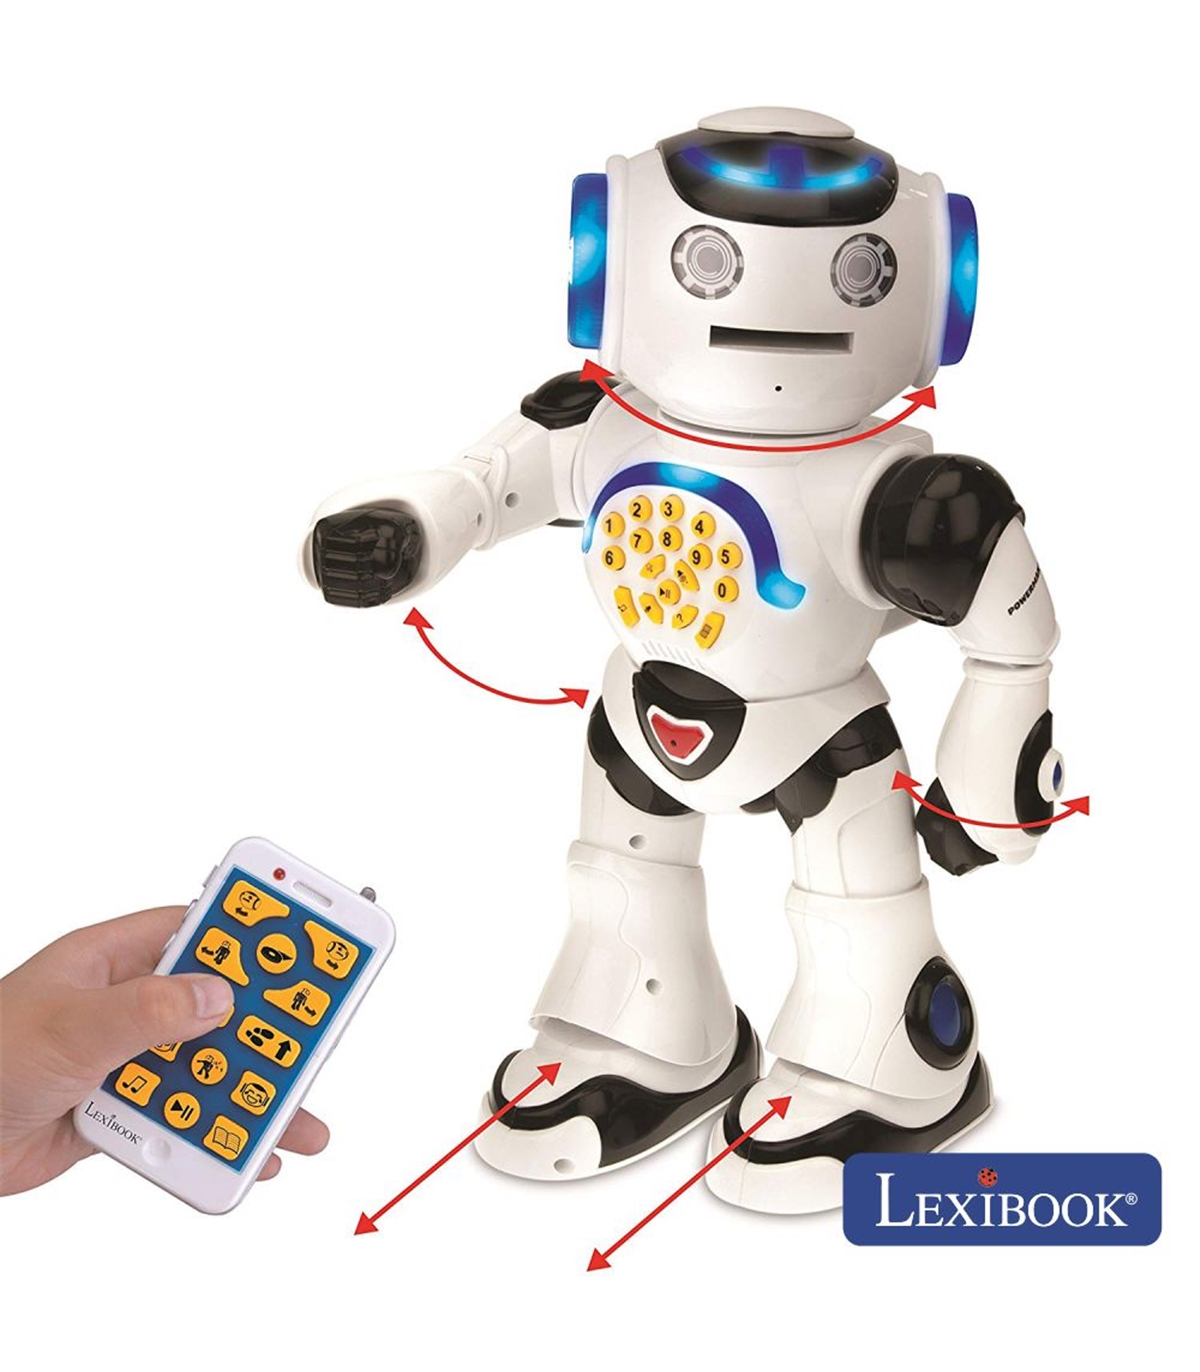 Robô de brinquedo dos anos 80 ganha IA e Machine Learning com Raspberry Pi  - TecMundo